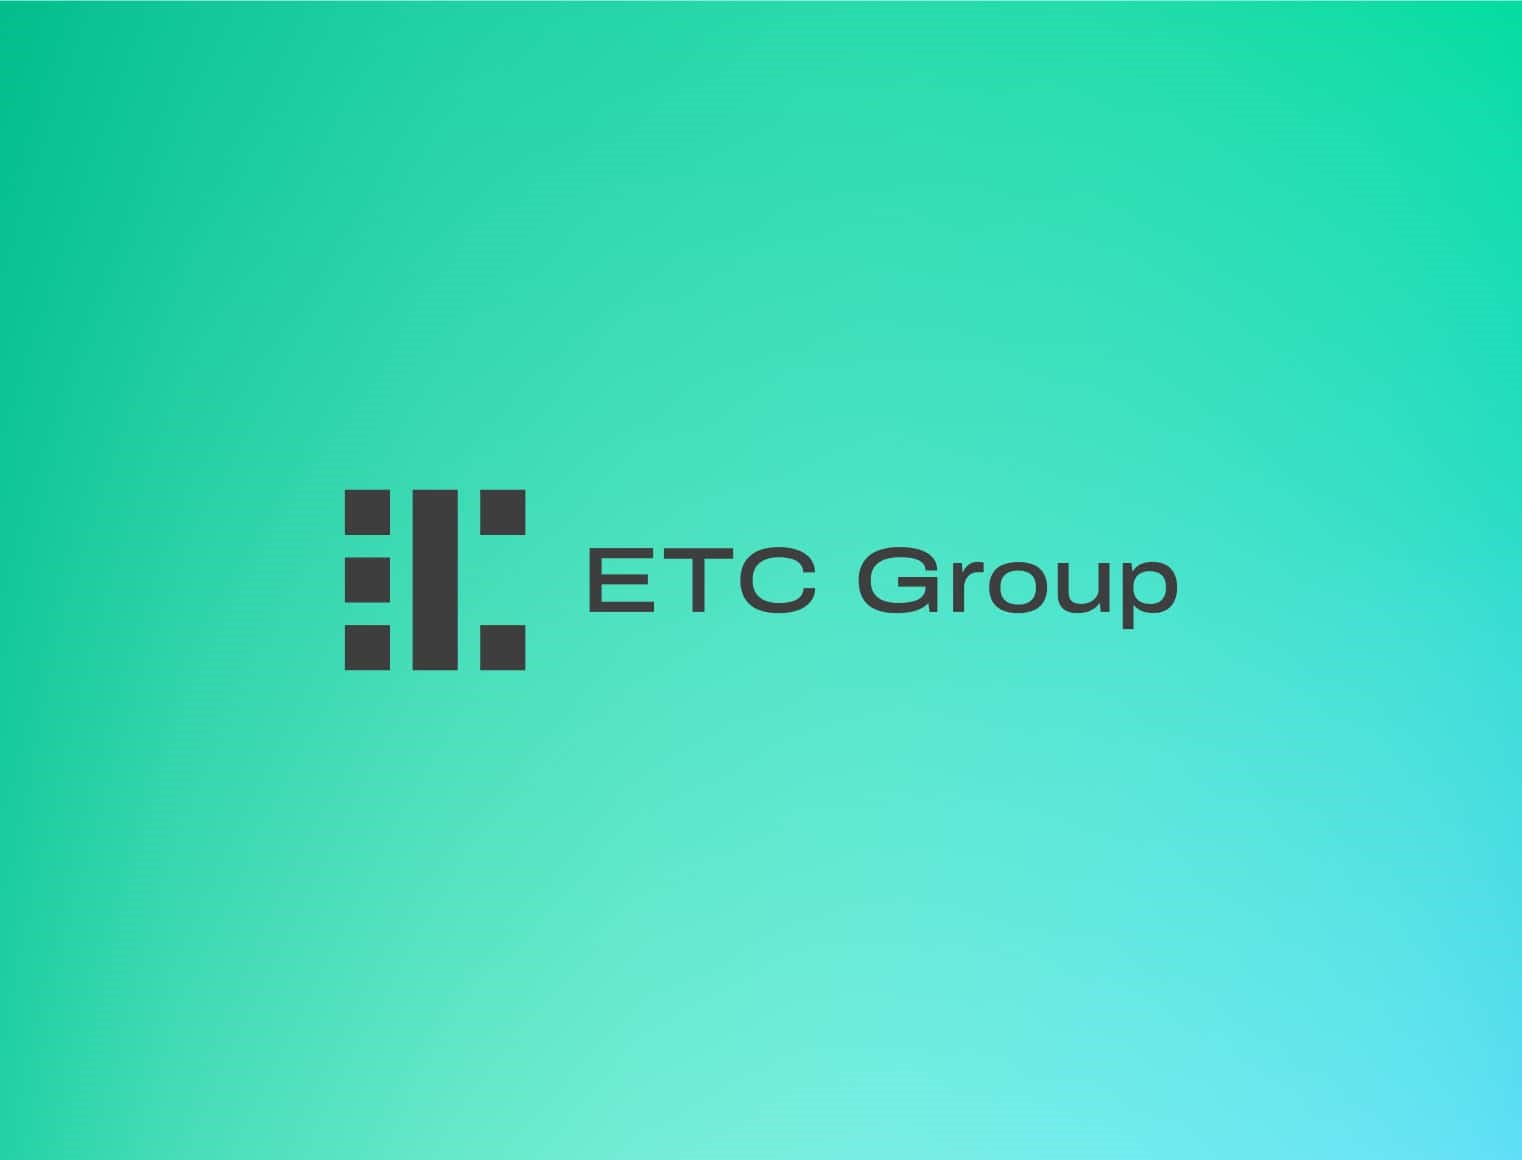 ETC Groups VD Tim Bevan diskuterar den betydande effekten av US Securities and Exchange (SEC):s godkännande av Bitcoin ETF:er, vilket förbättrar marknadstillträde och legitimerar kryptovalutor. Detta godkännande ledde till betydande marknadsförskjutningar, inklusive utflöden från befintliga kryptoprodukter som Grayscale Bitcoin Trust och inflöden till nya ETFer från stora finansiella aktörer som Fidelity och iShares.